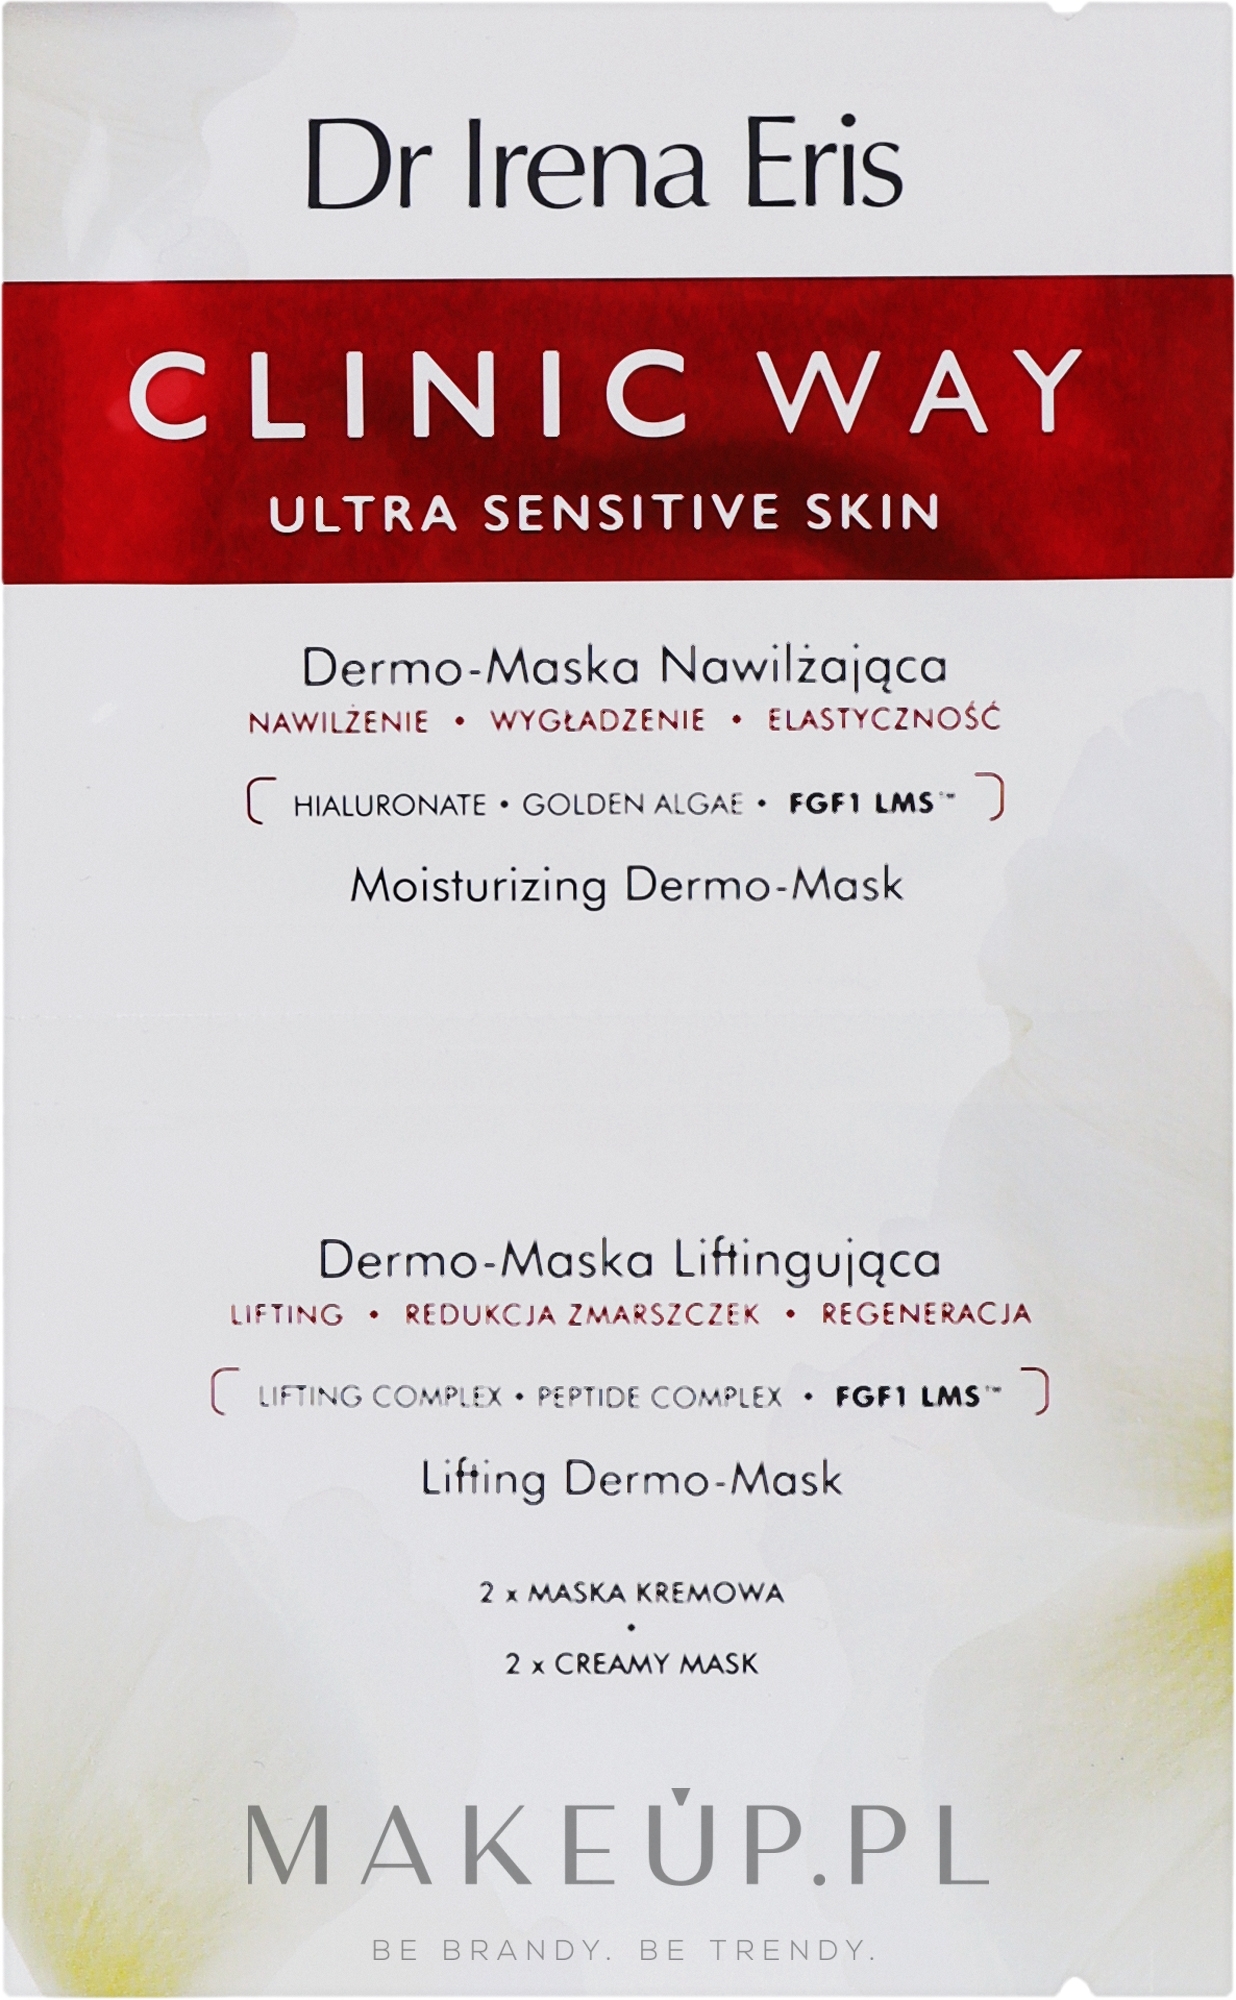 Nawilżająca maska liftingująca do twarzy - Dr. Eris Clinic Way Dermo-Moisturizing Mask + Dermo-Lifting Mask — Zdjęcie 2 x 6 ml